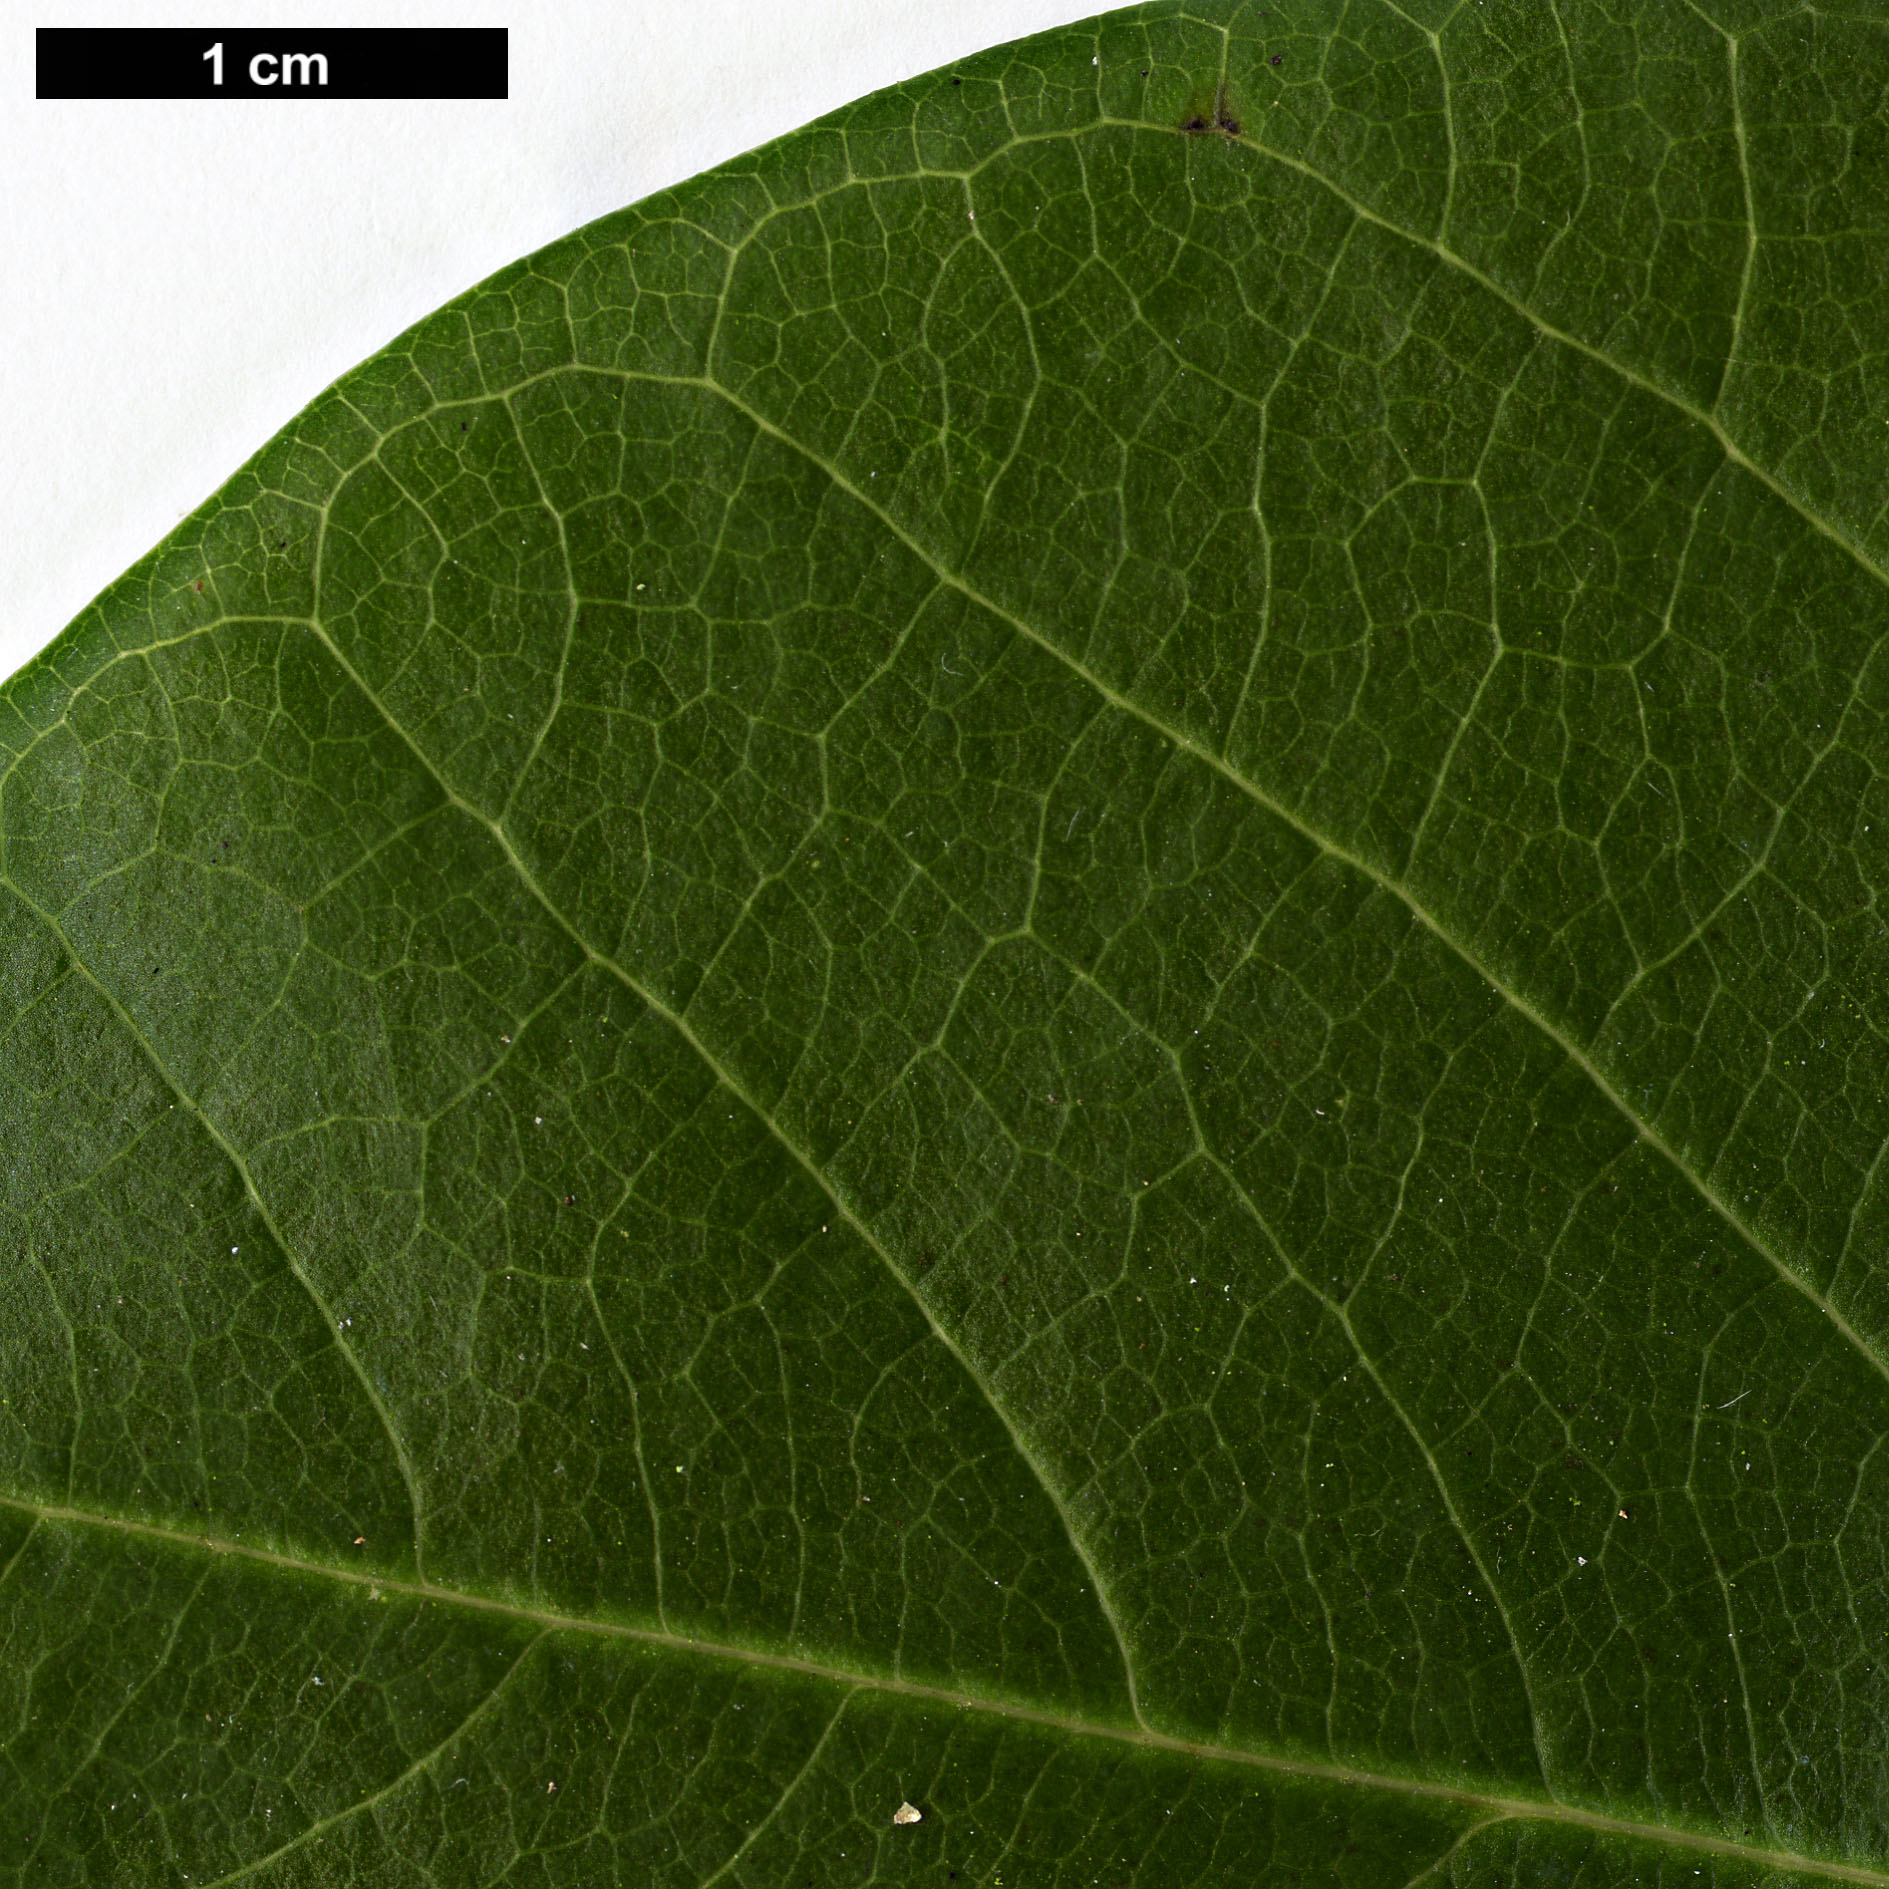 High resolution image: Family: Magnoliaceae - Genus: Magnolia - Taxon: sargentiana